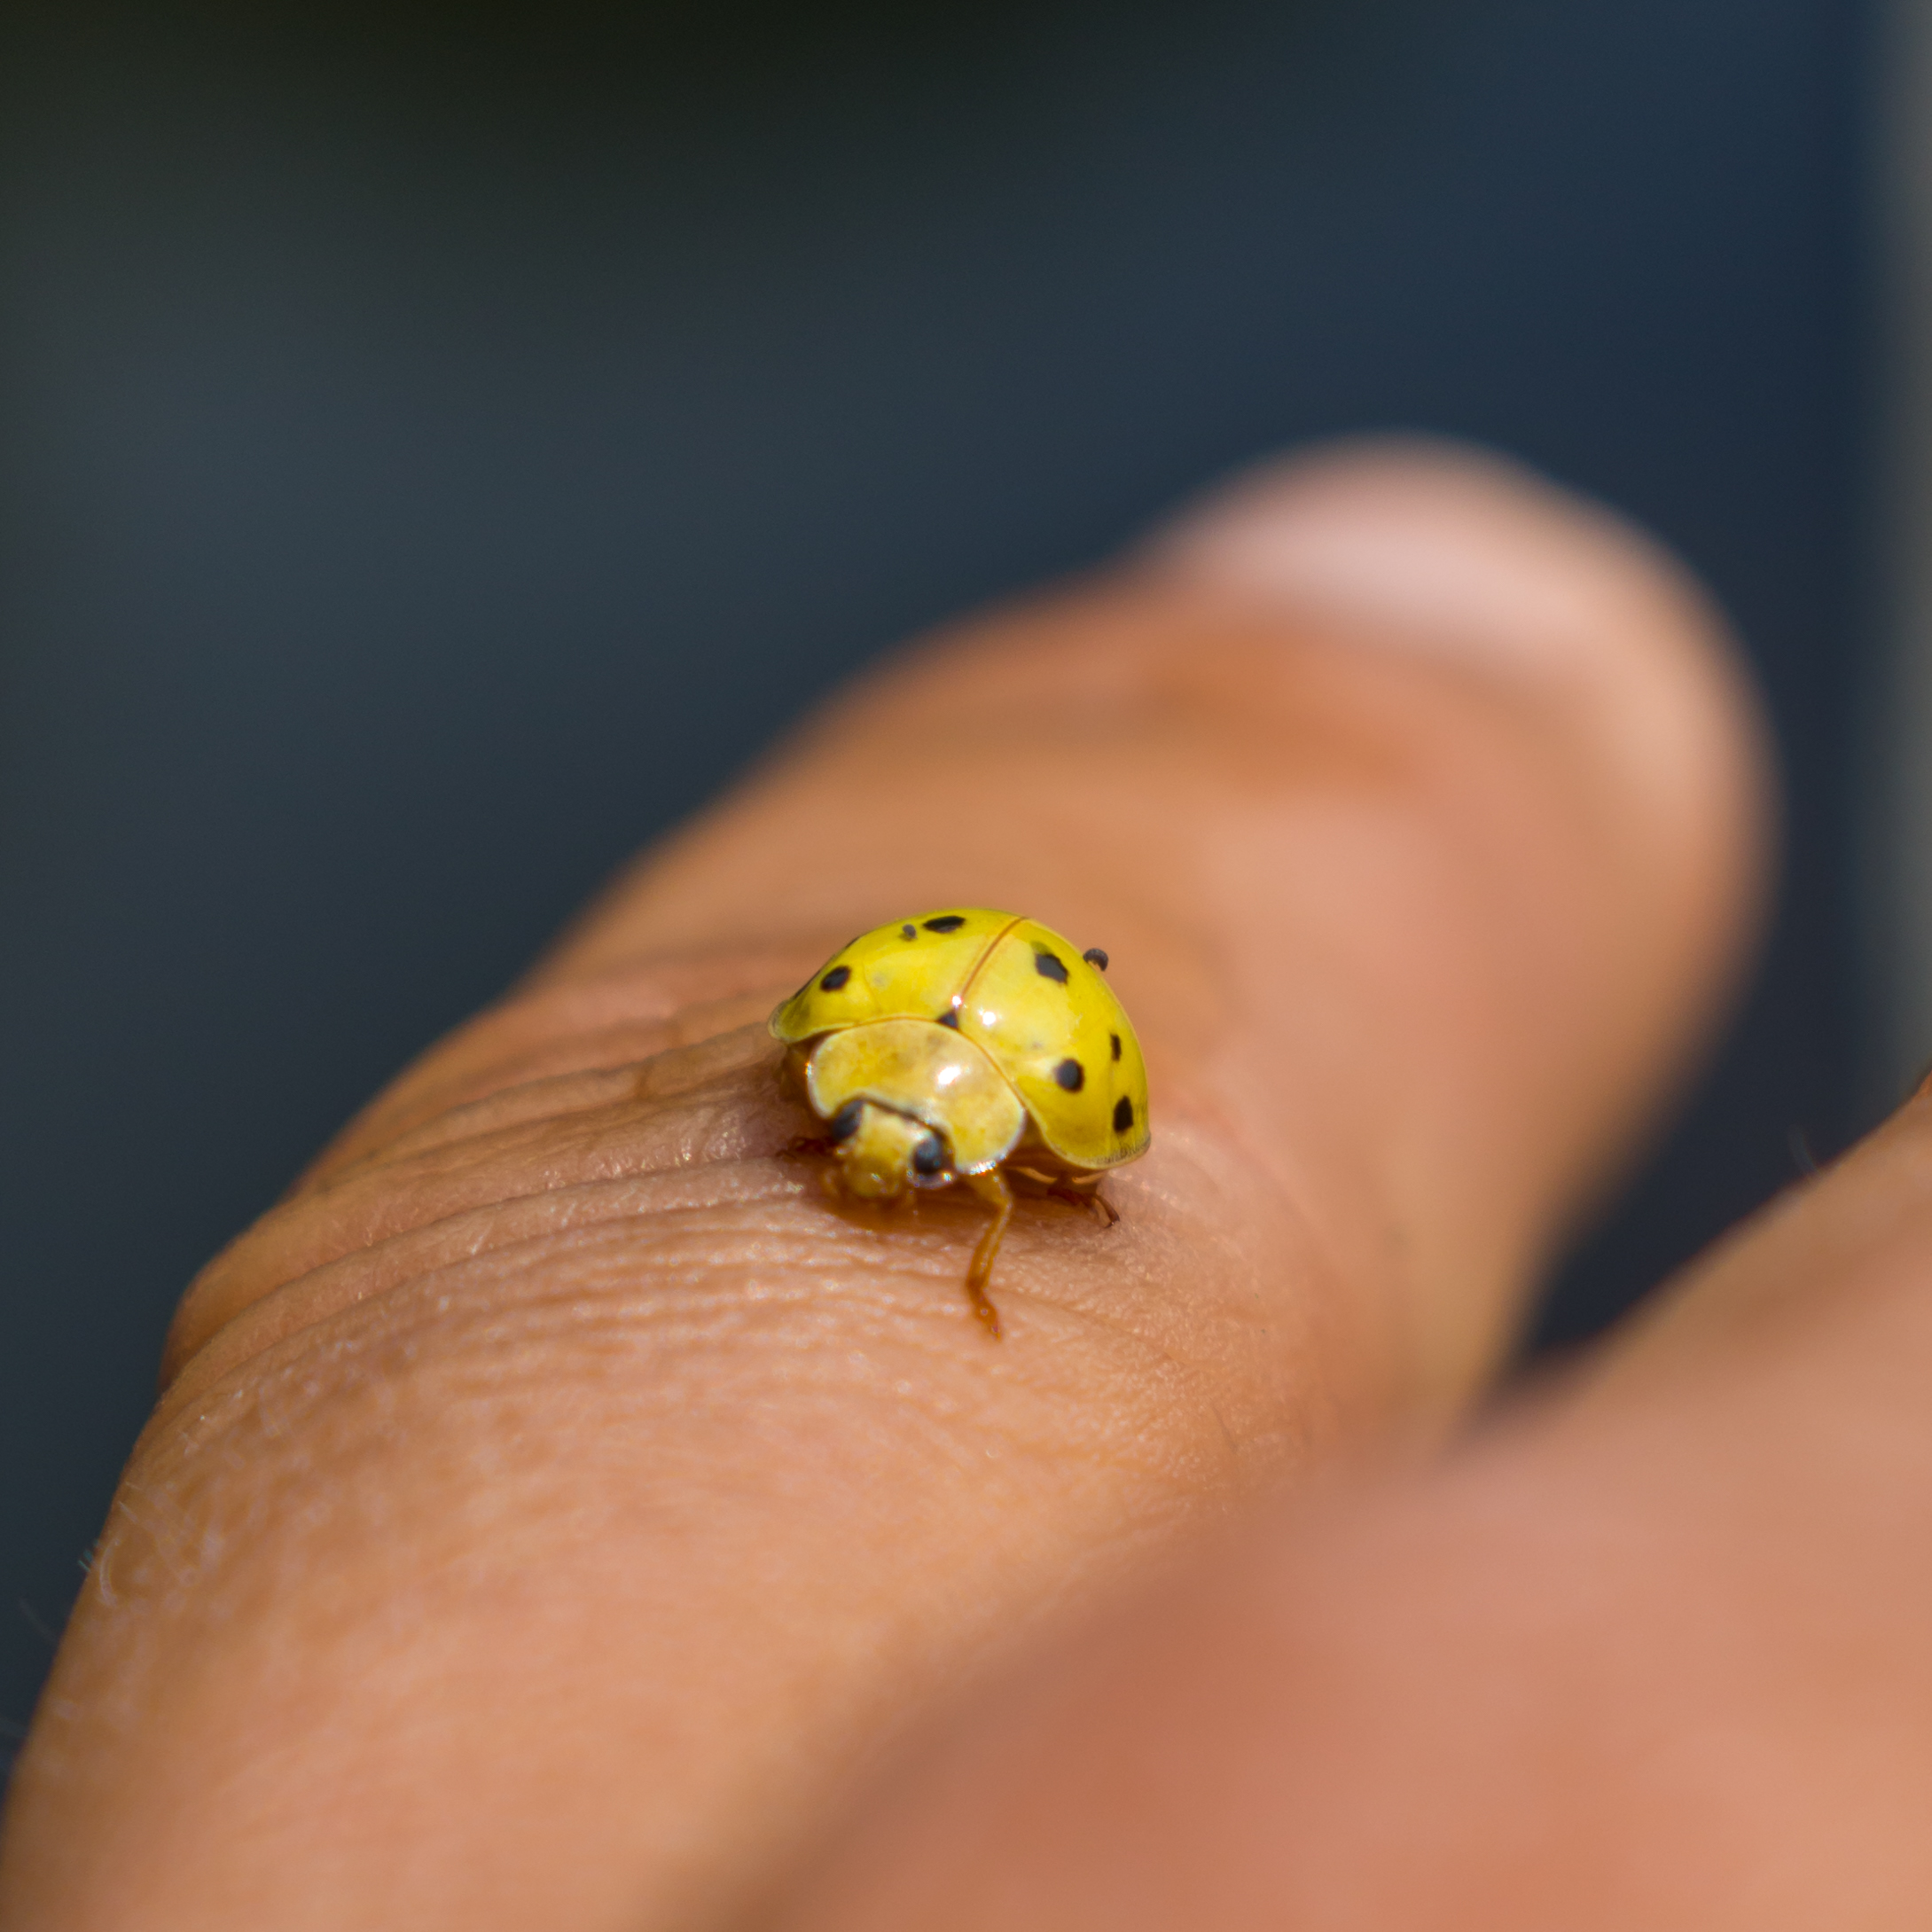 Yellow bug on finger